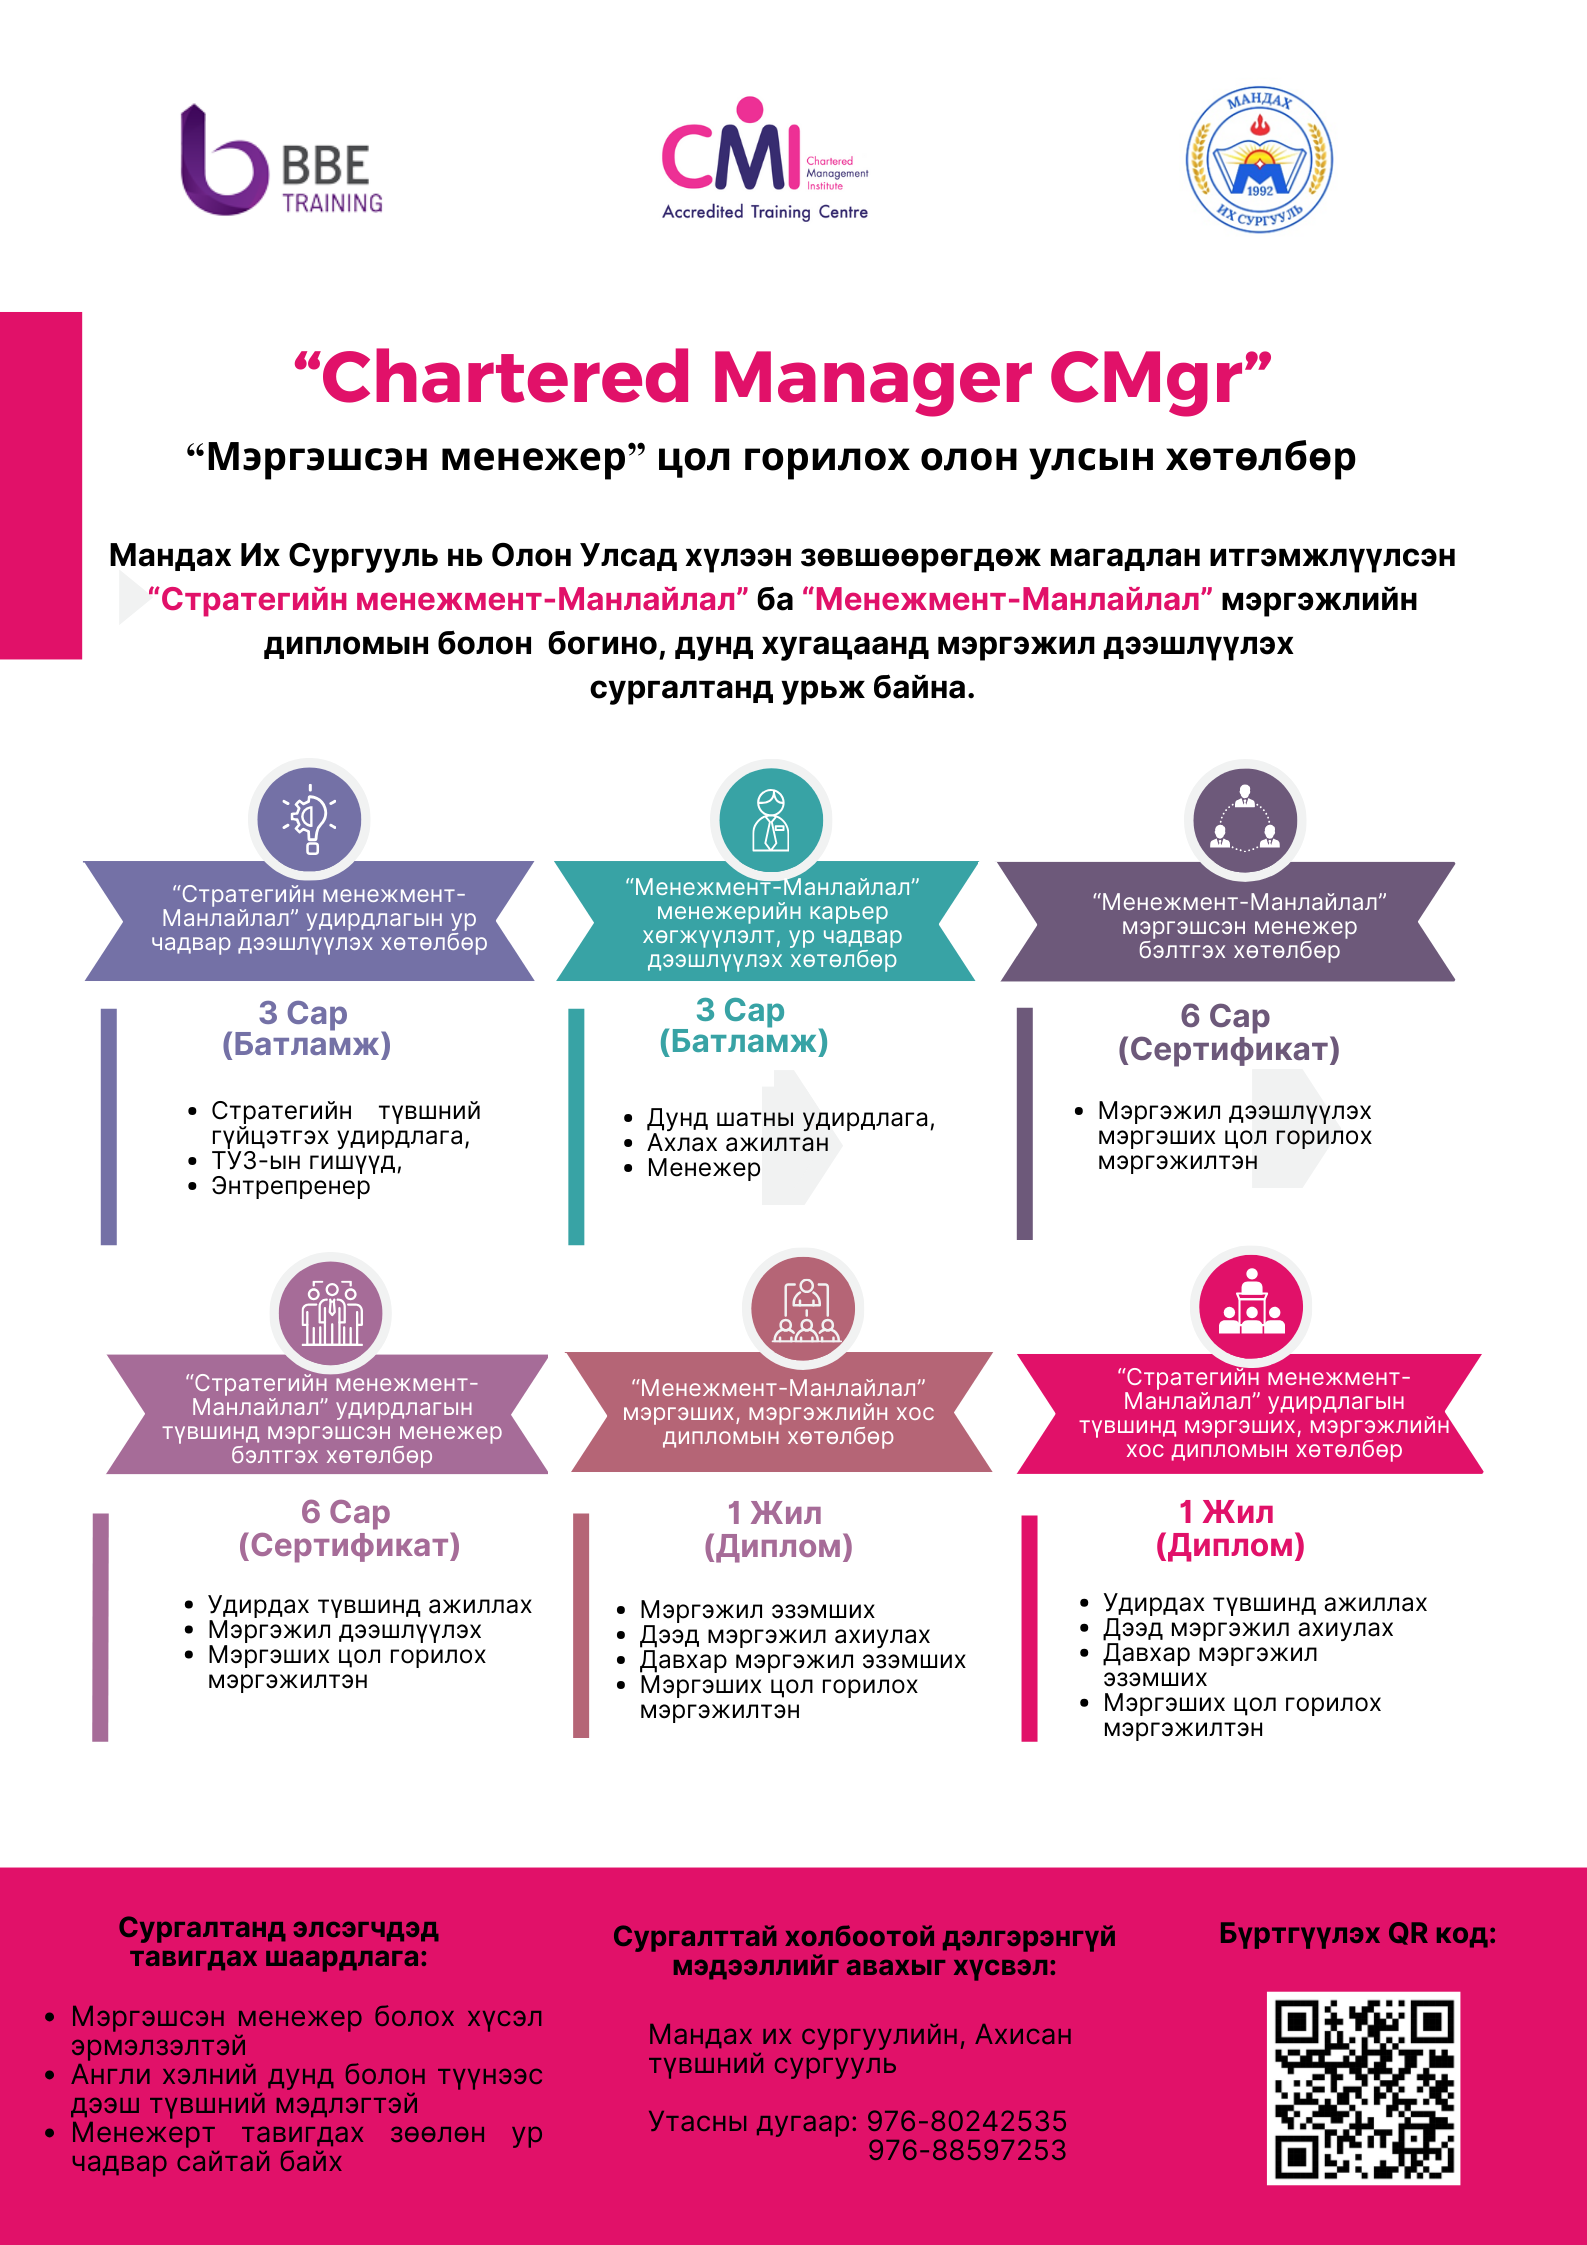 Мандах их сургууль нь “Chartered Manager (CMgr) - Мэргэшсэн менежер” цол горилох олон улсын хөтөлбөрийг албан ёсны эрхтэйгээр хэрэгжүүлж эхэллээ.